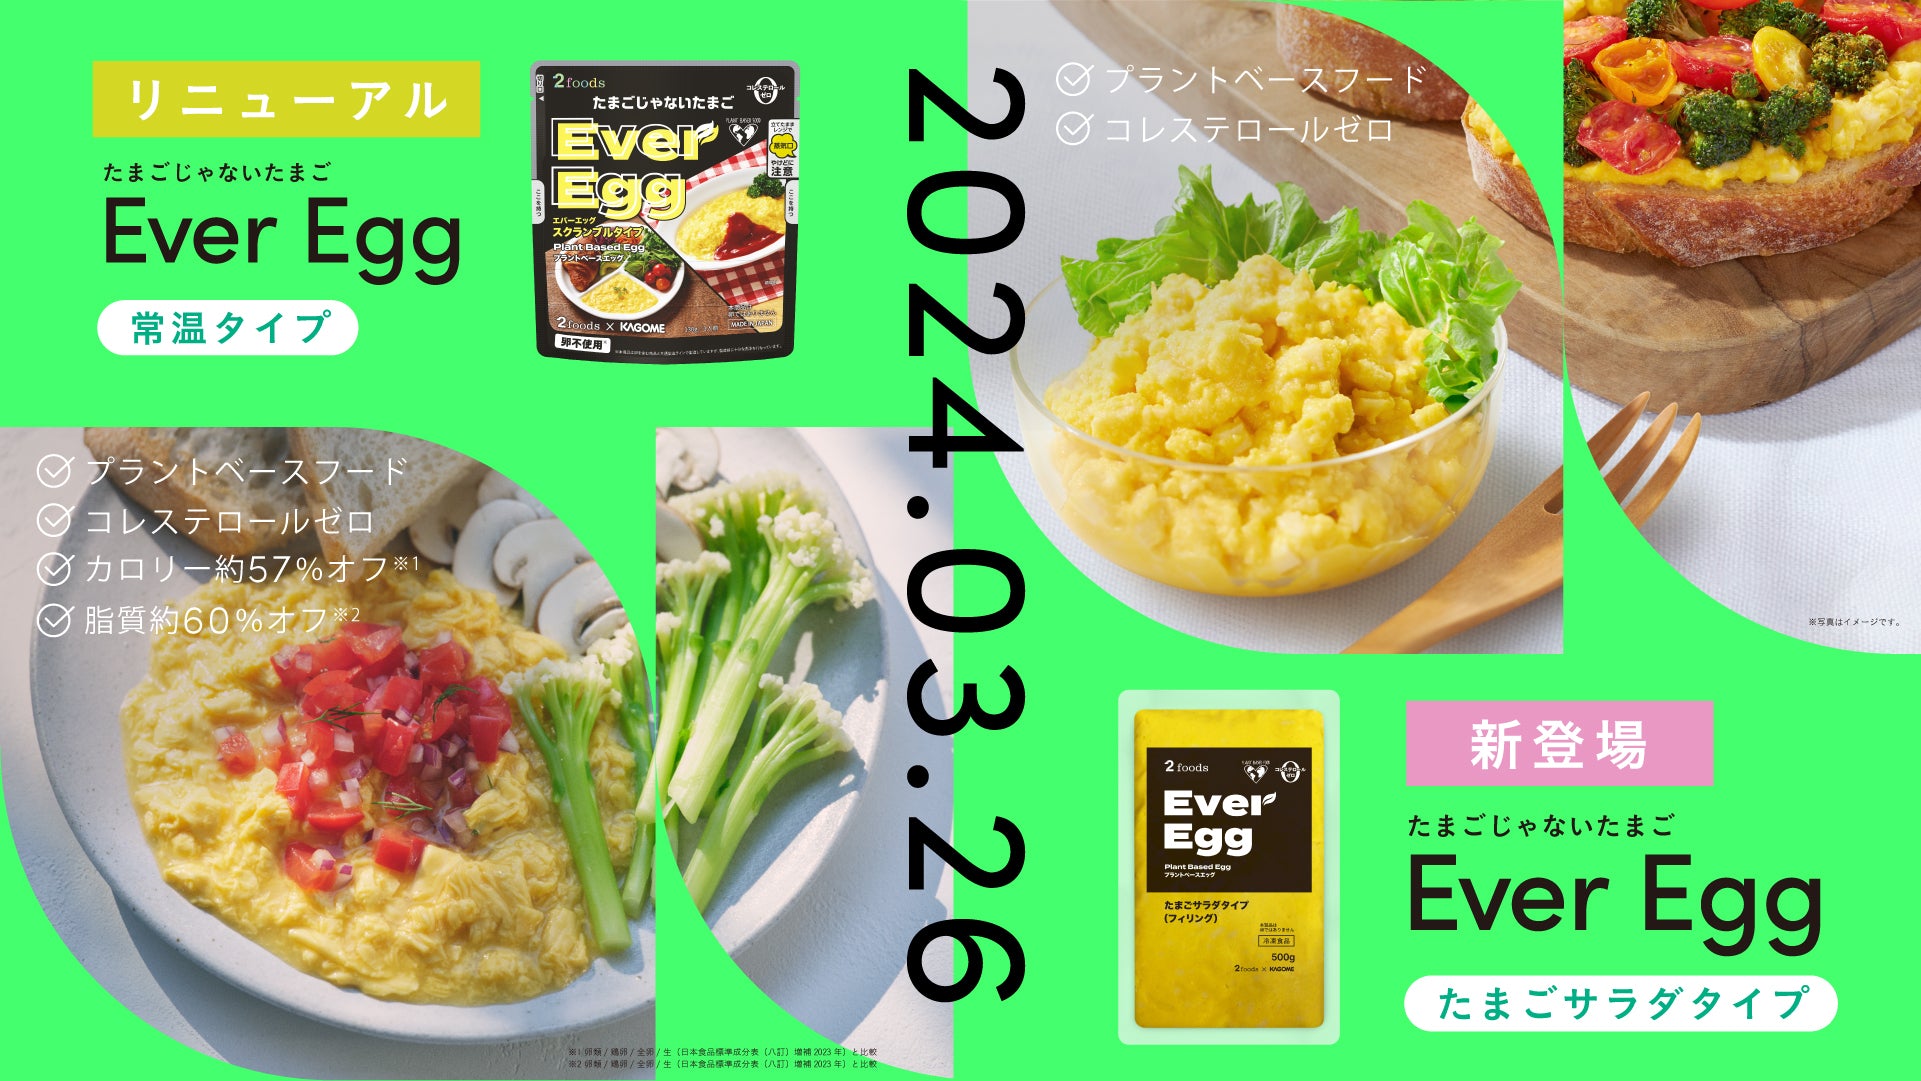 カゴメ株式会社との共同開発商品「Ever Egg」常温タイプをさらにおいしくリニューアル。さらに値下げをして3月26日（火）より2foods店舗・公式オンラインショップにて発売します。また、「Ever Egg」初の派生商品であるたまごサラダタイプも同日より発売します。